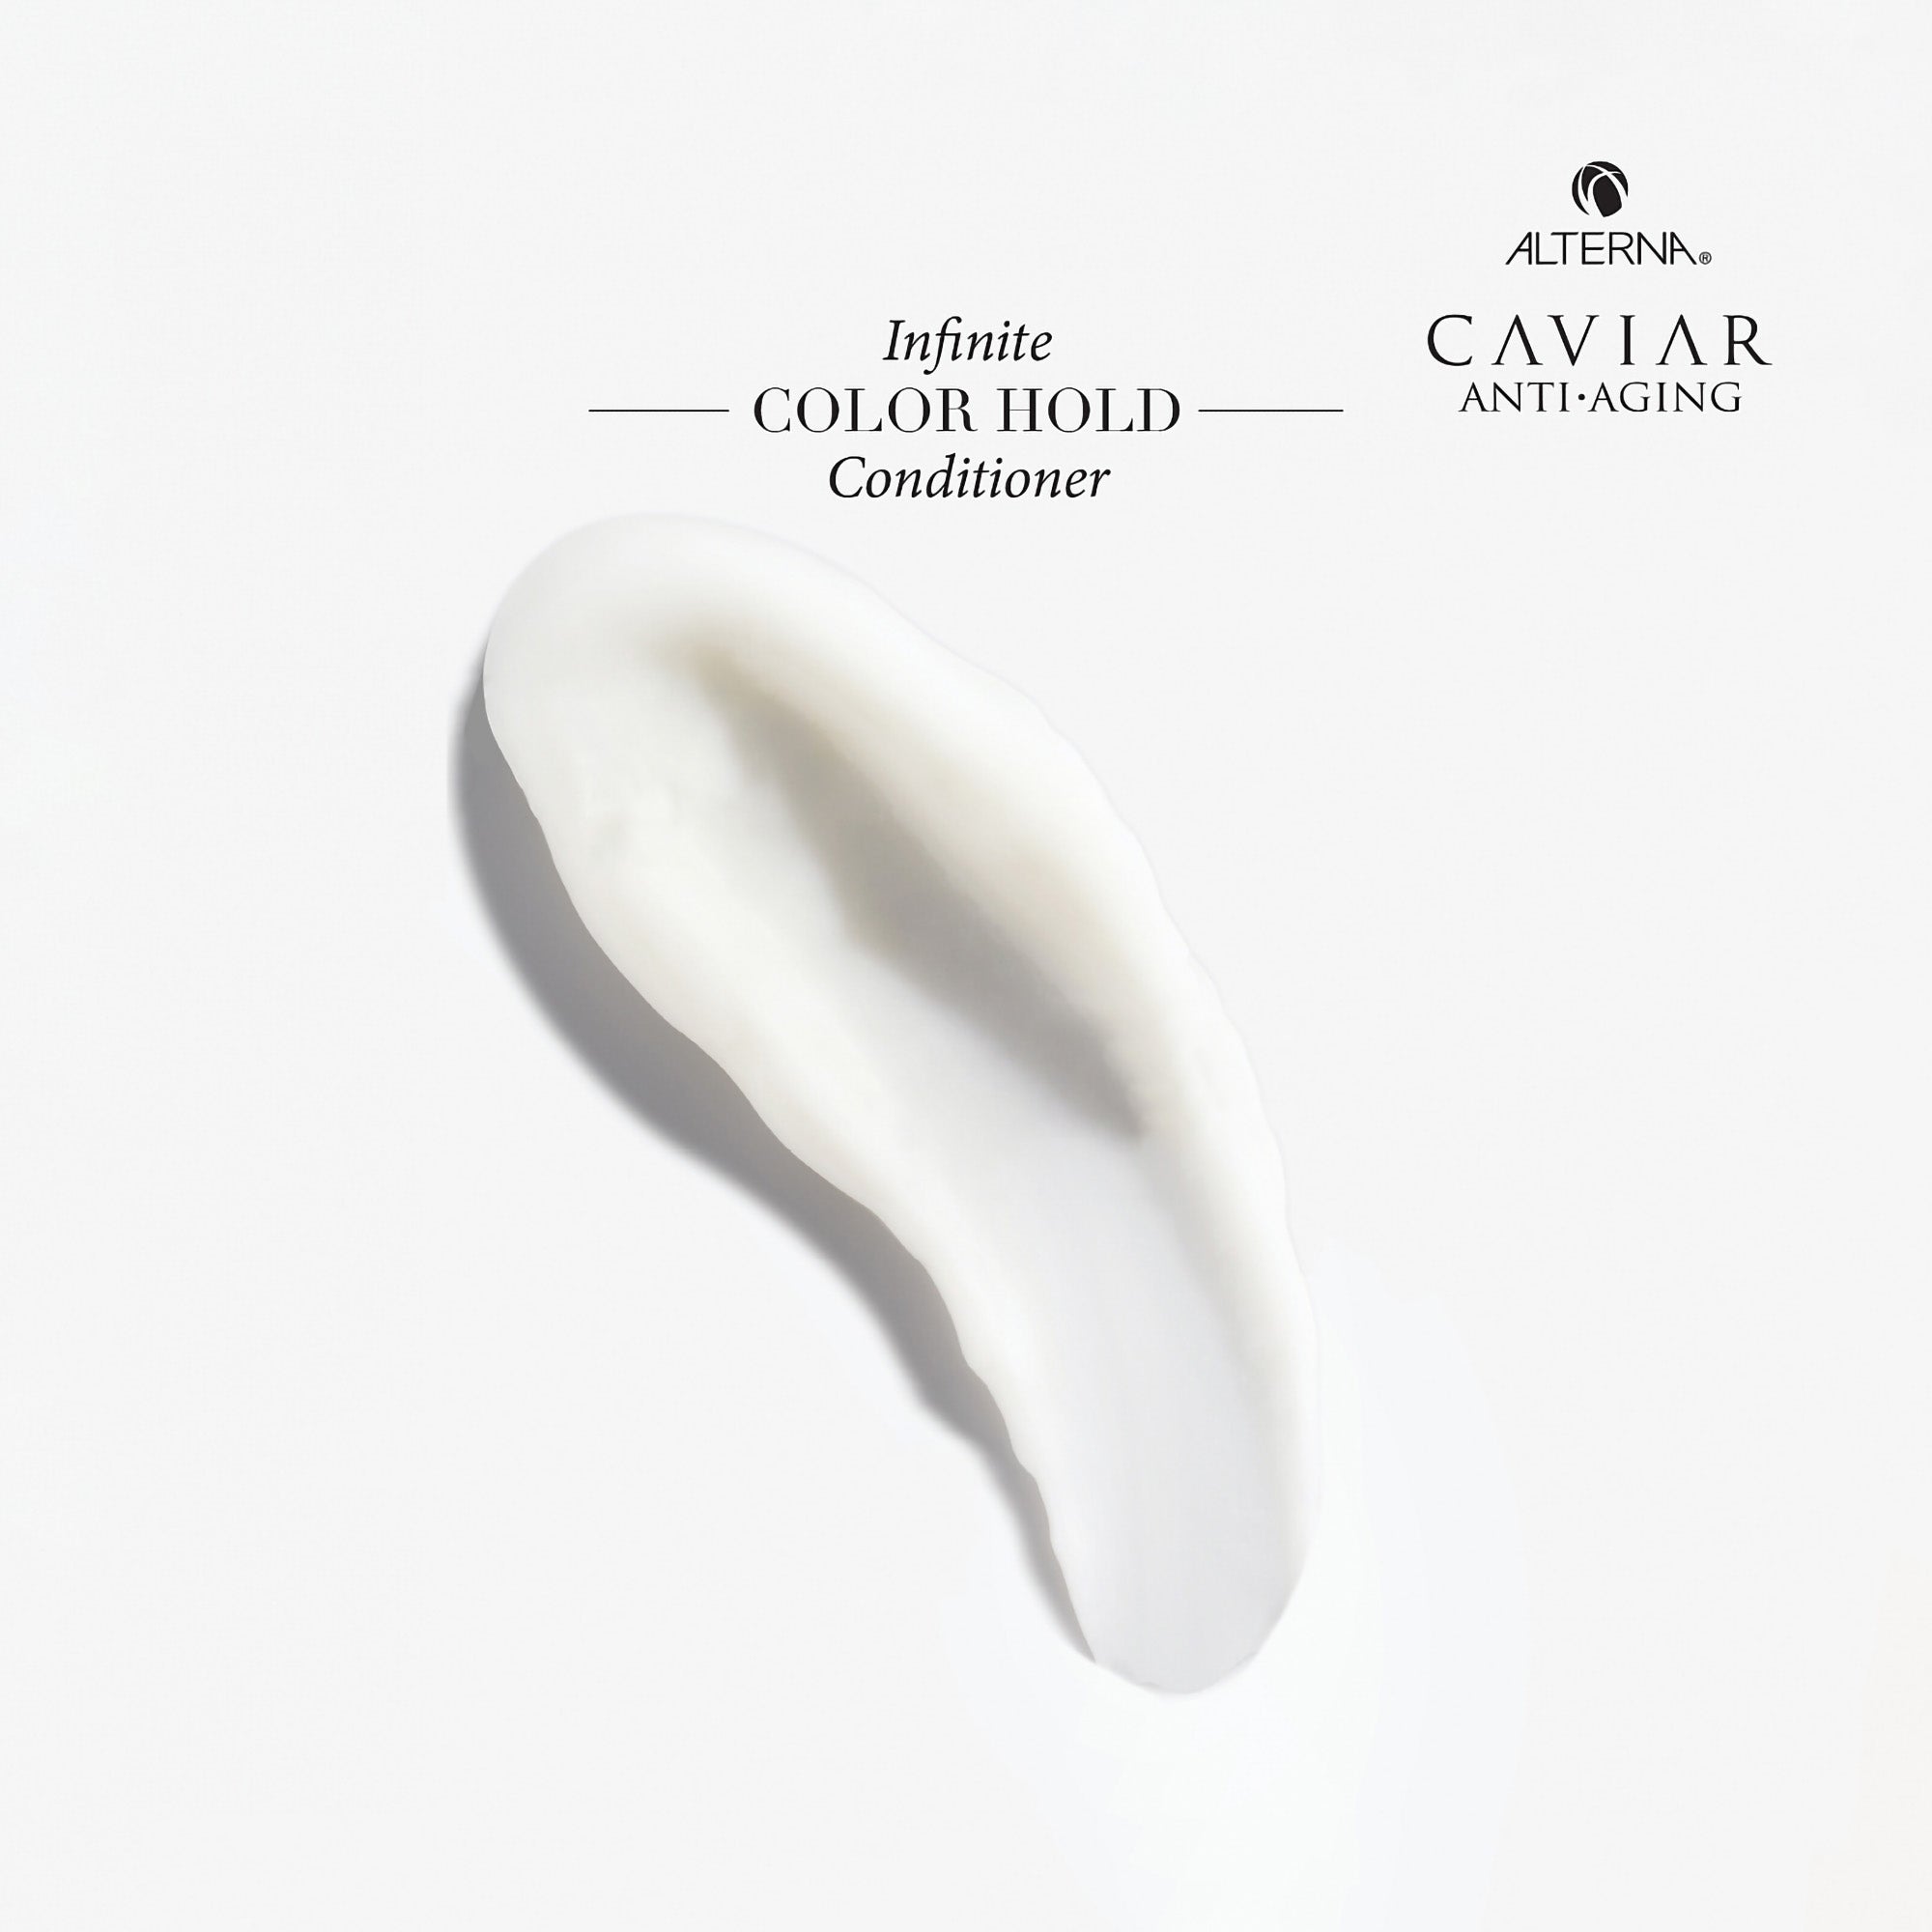 Alterna Caviar Anti-Aging Infinite Color Hold Conditioner / 8.5OZ